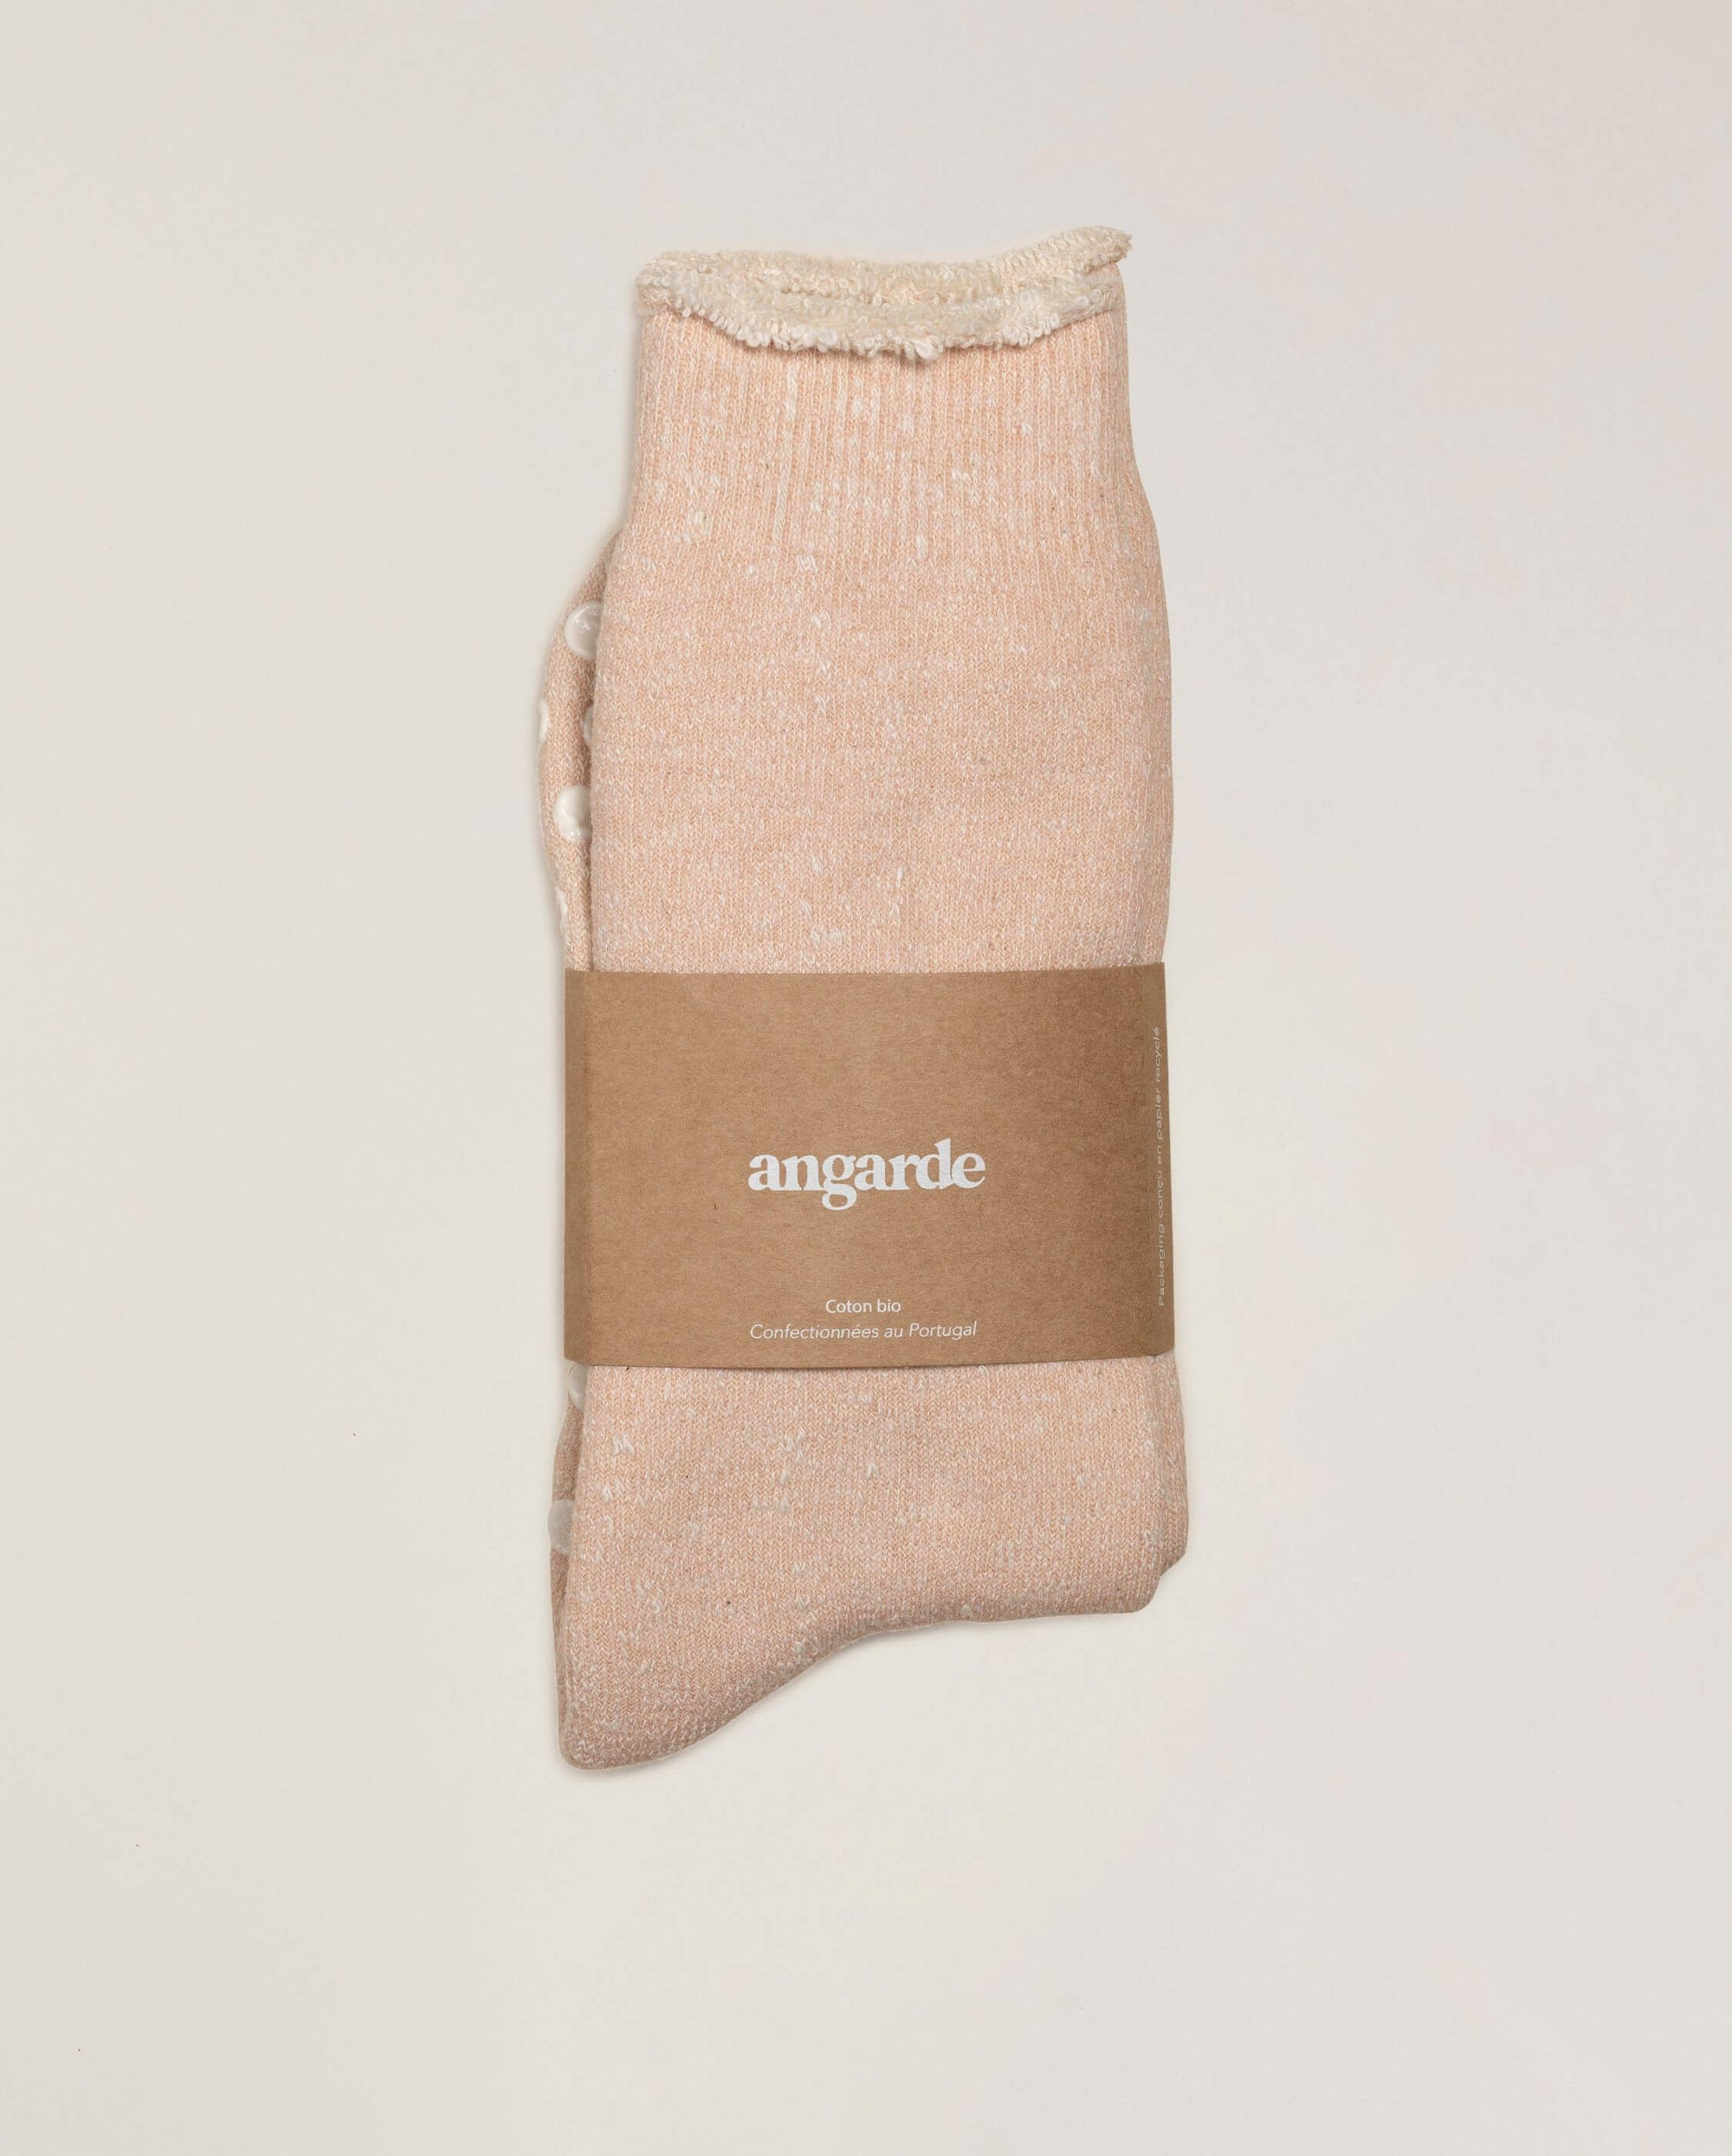 Men's slipper socks, powder pink